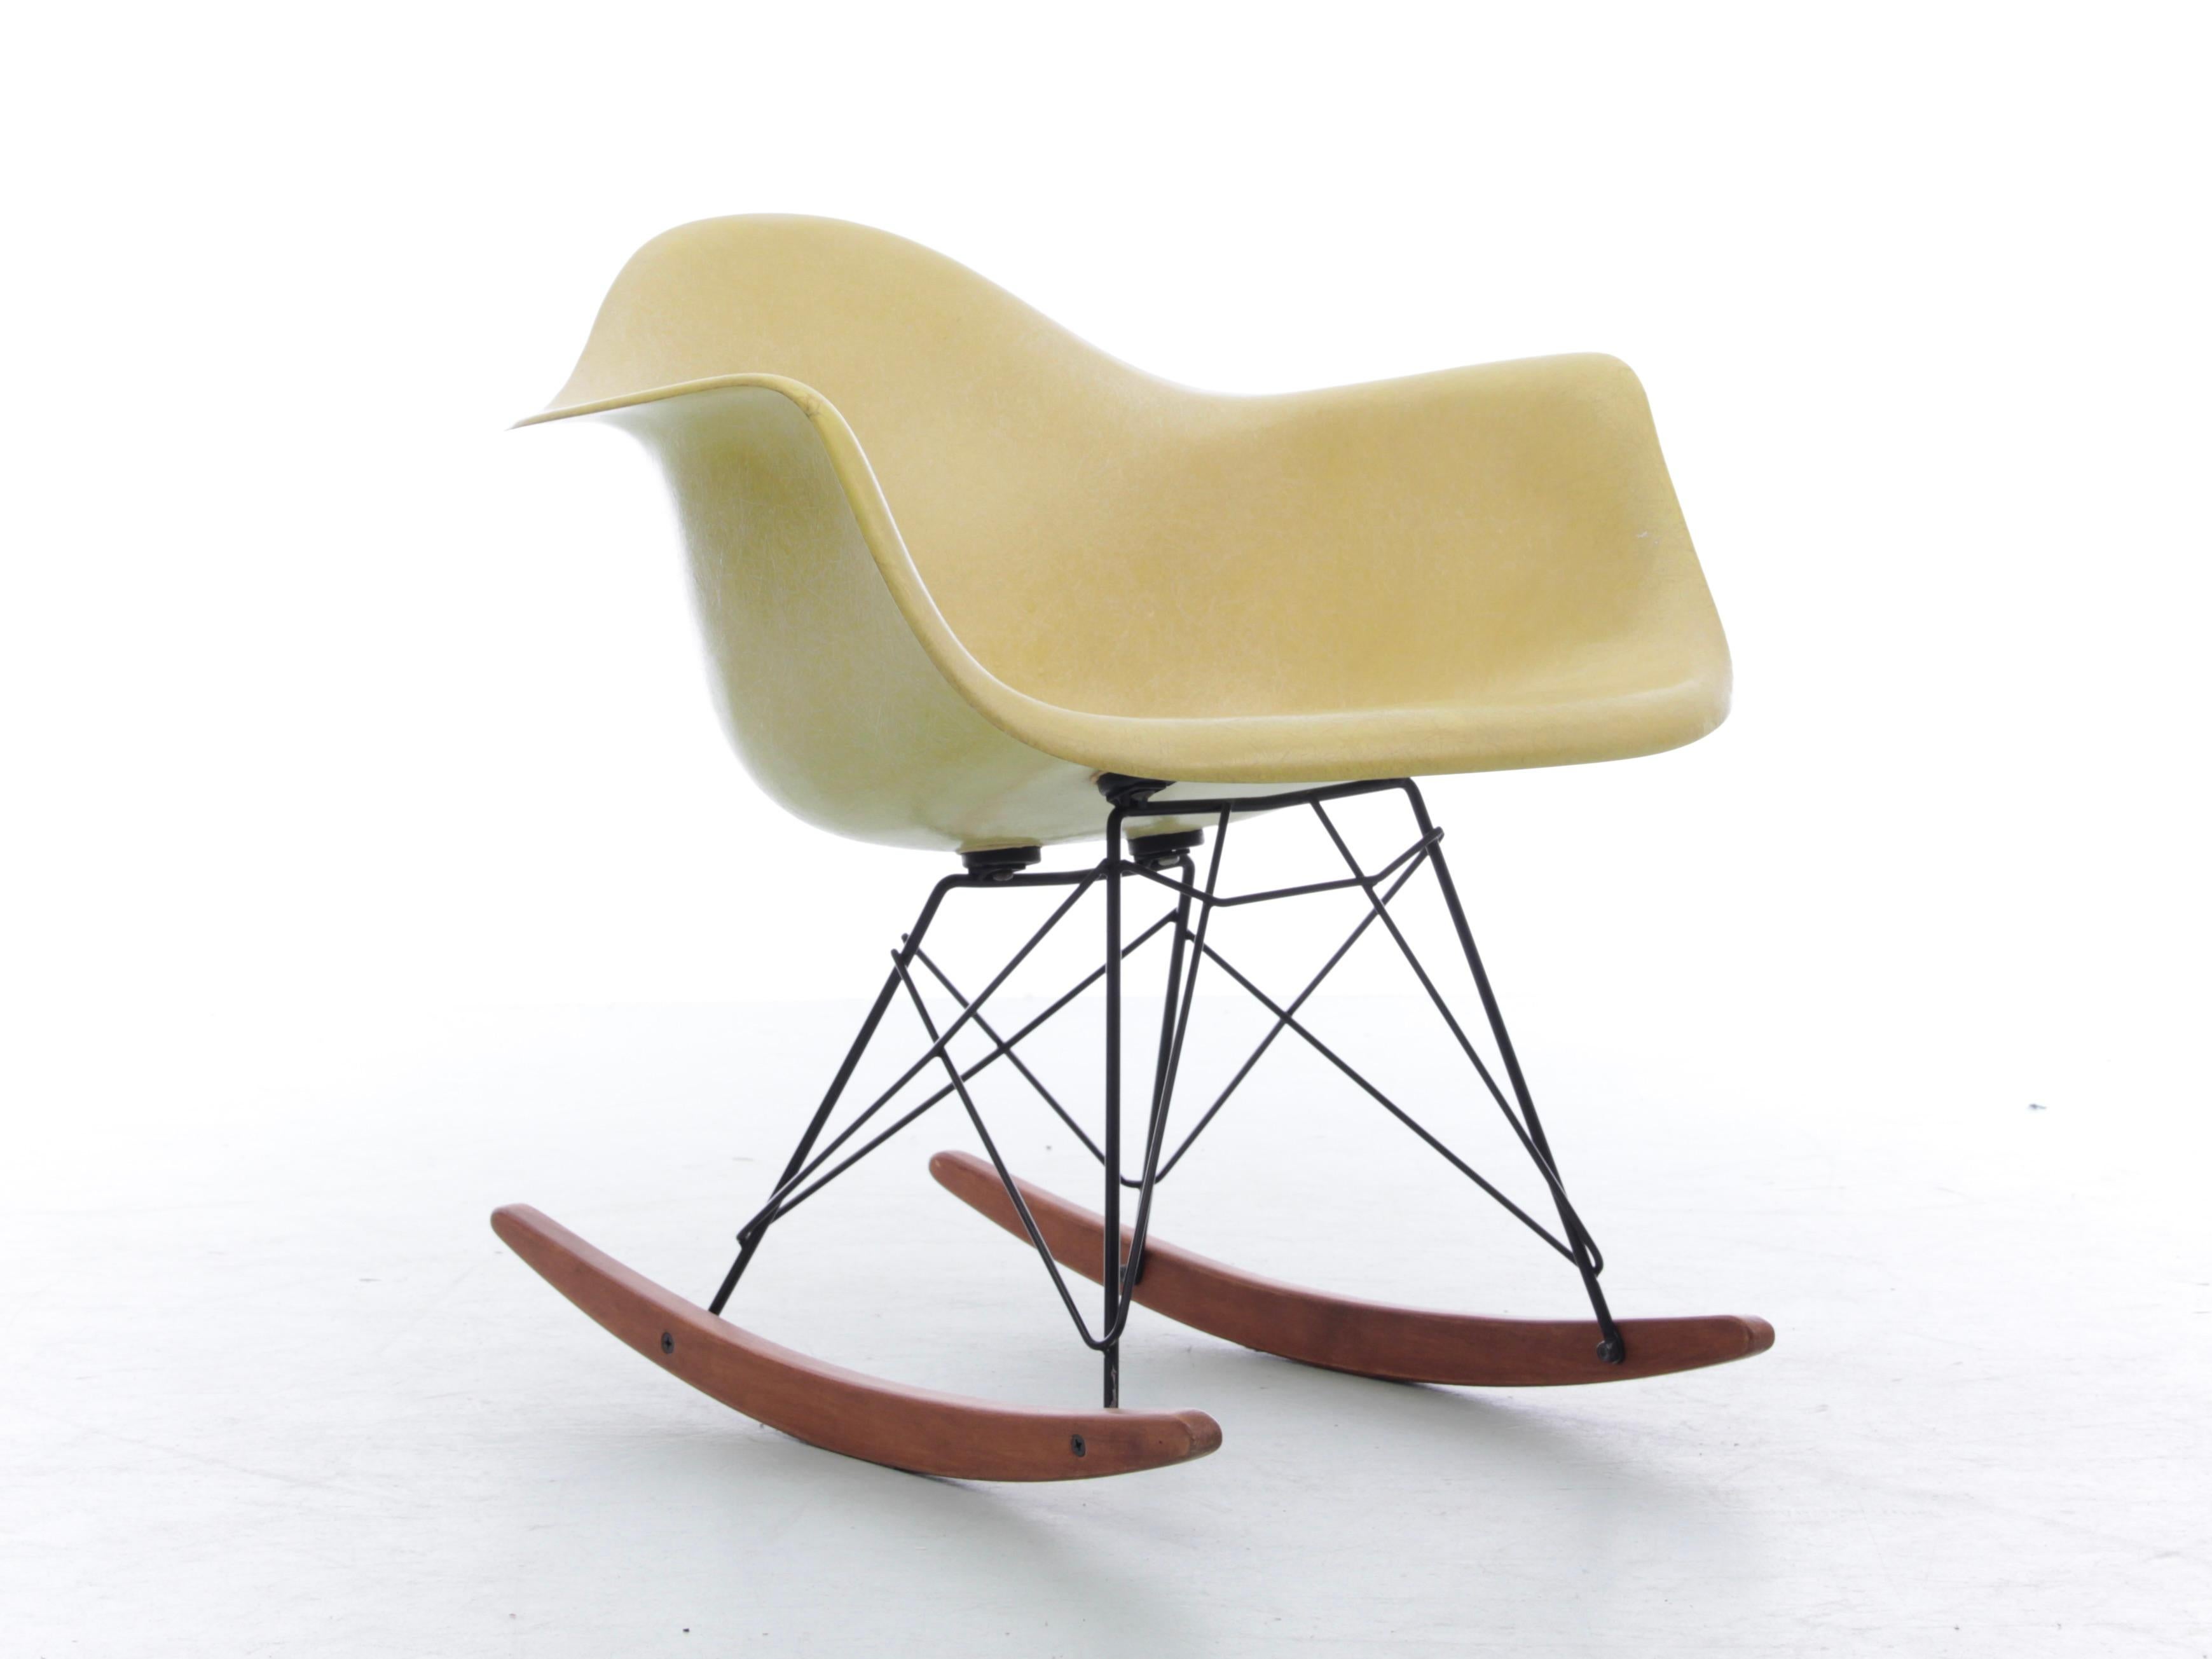 Authentic Armchair RAR (Rocking Arm Chair) shell Eames original und vintage edition Herman Miller Designed by Charles EAMES - 1950

Originaler Fiberglasrumpf in blasser junger Farbe. Spur eines Labels unter dem Sitz.

Rumpf in ausgezeichnetem